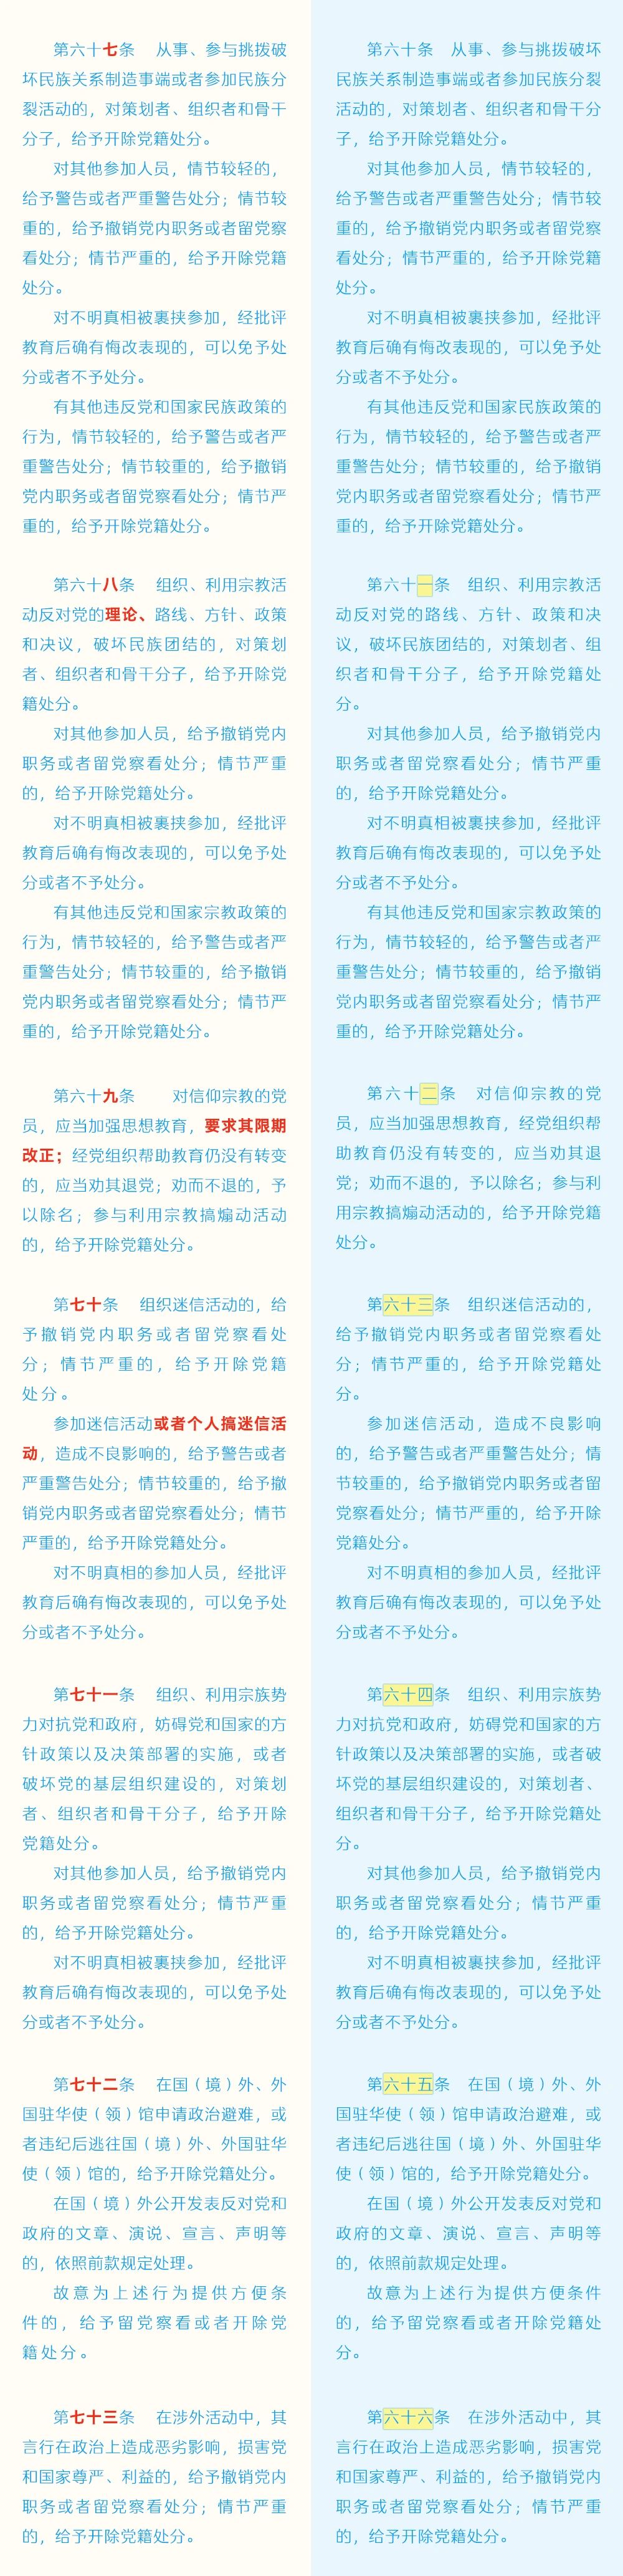 《中国共产党纪律处分条例》修订条文对照表10.jpg